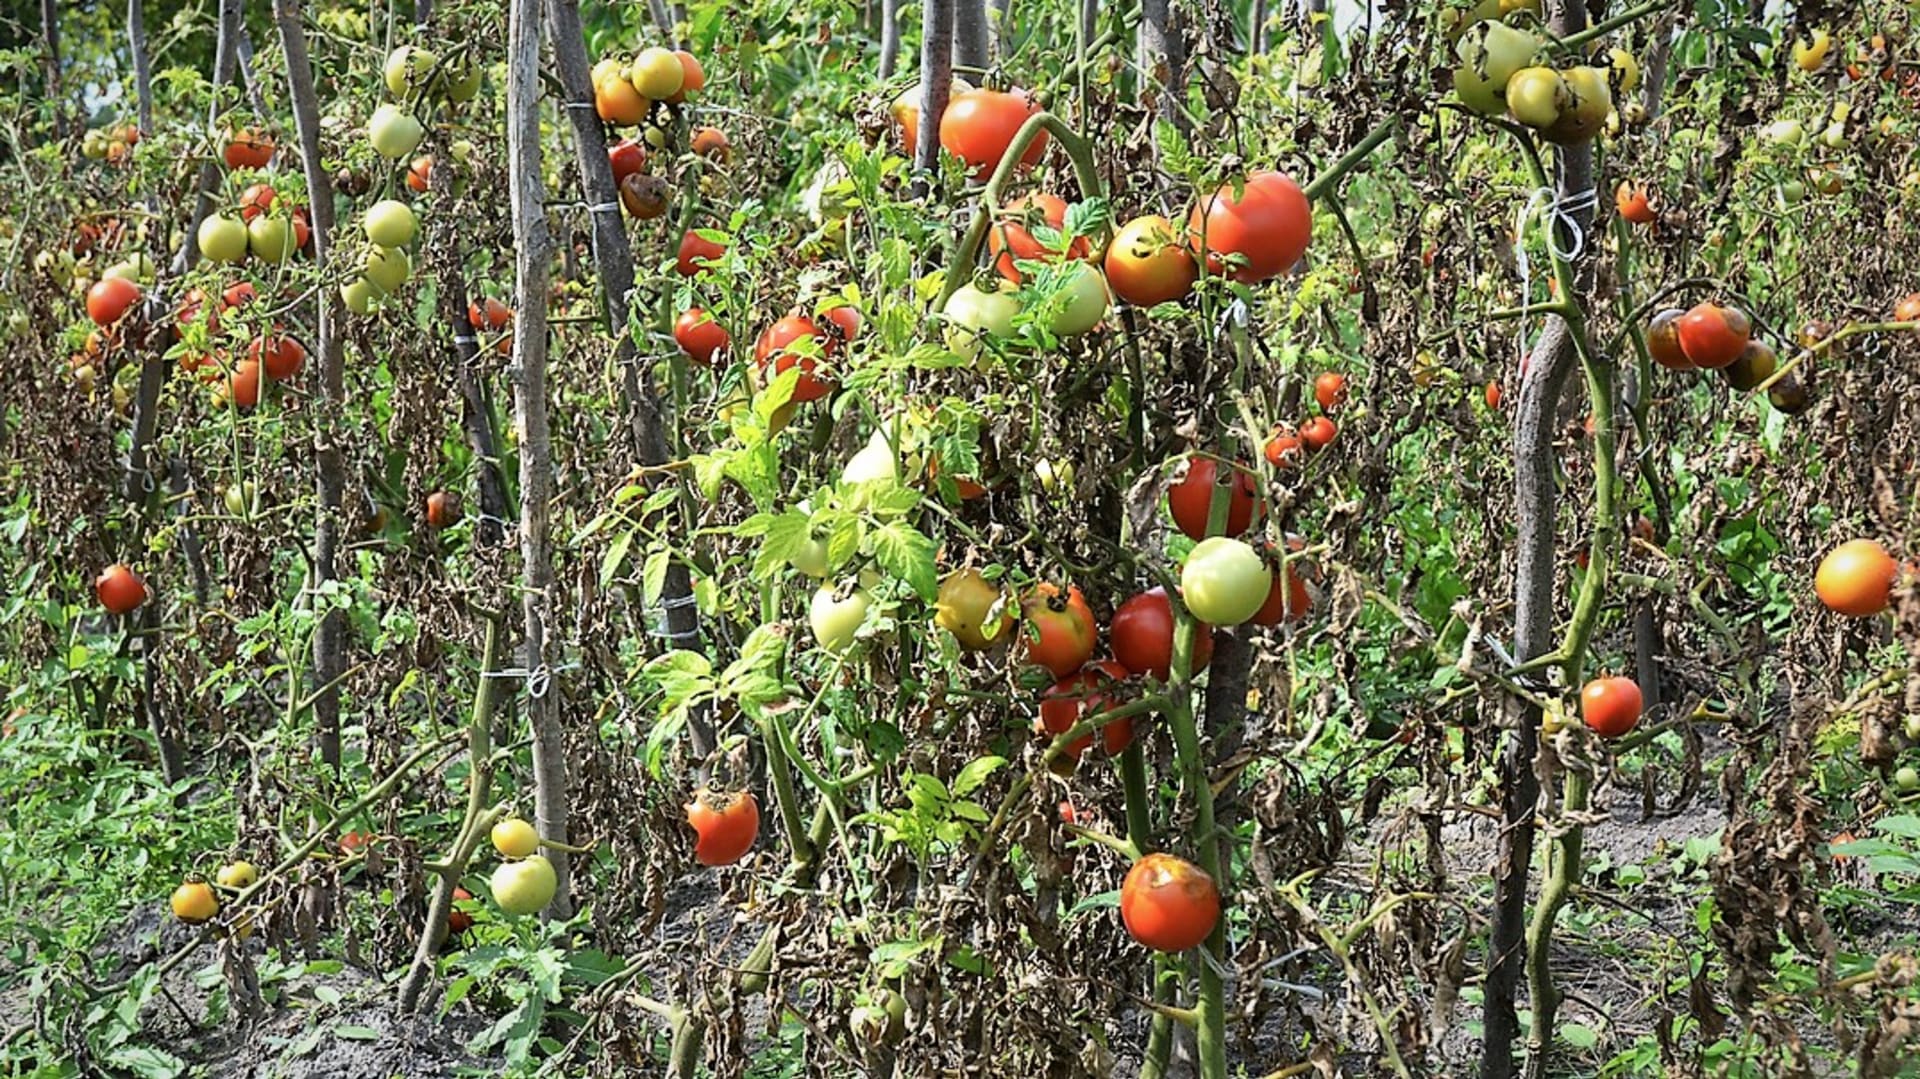 Plíseň rajčete, resp. plíseň bramboru na rajčeti (Phytophtora infestans), běžně plíseň bramborová je jednou z nejobávanějších a nejzávažnějších nemocí rajčat, když se v létě rozšíří, dokáže zdecimovat celou úrodu. Napadá listy, stonky a plody rajčat.